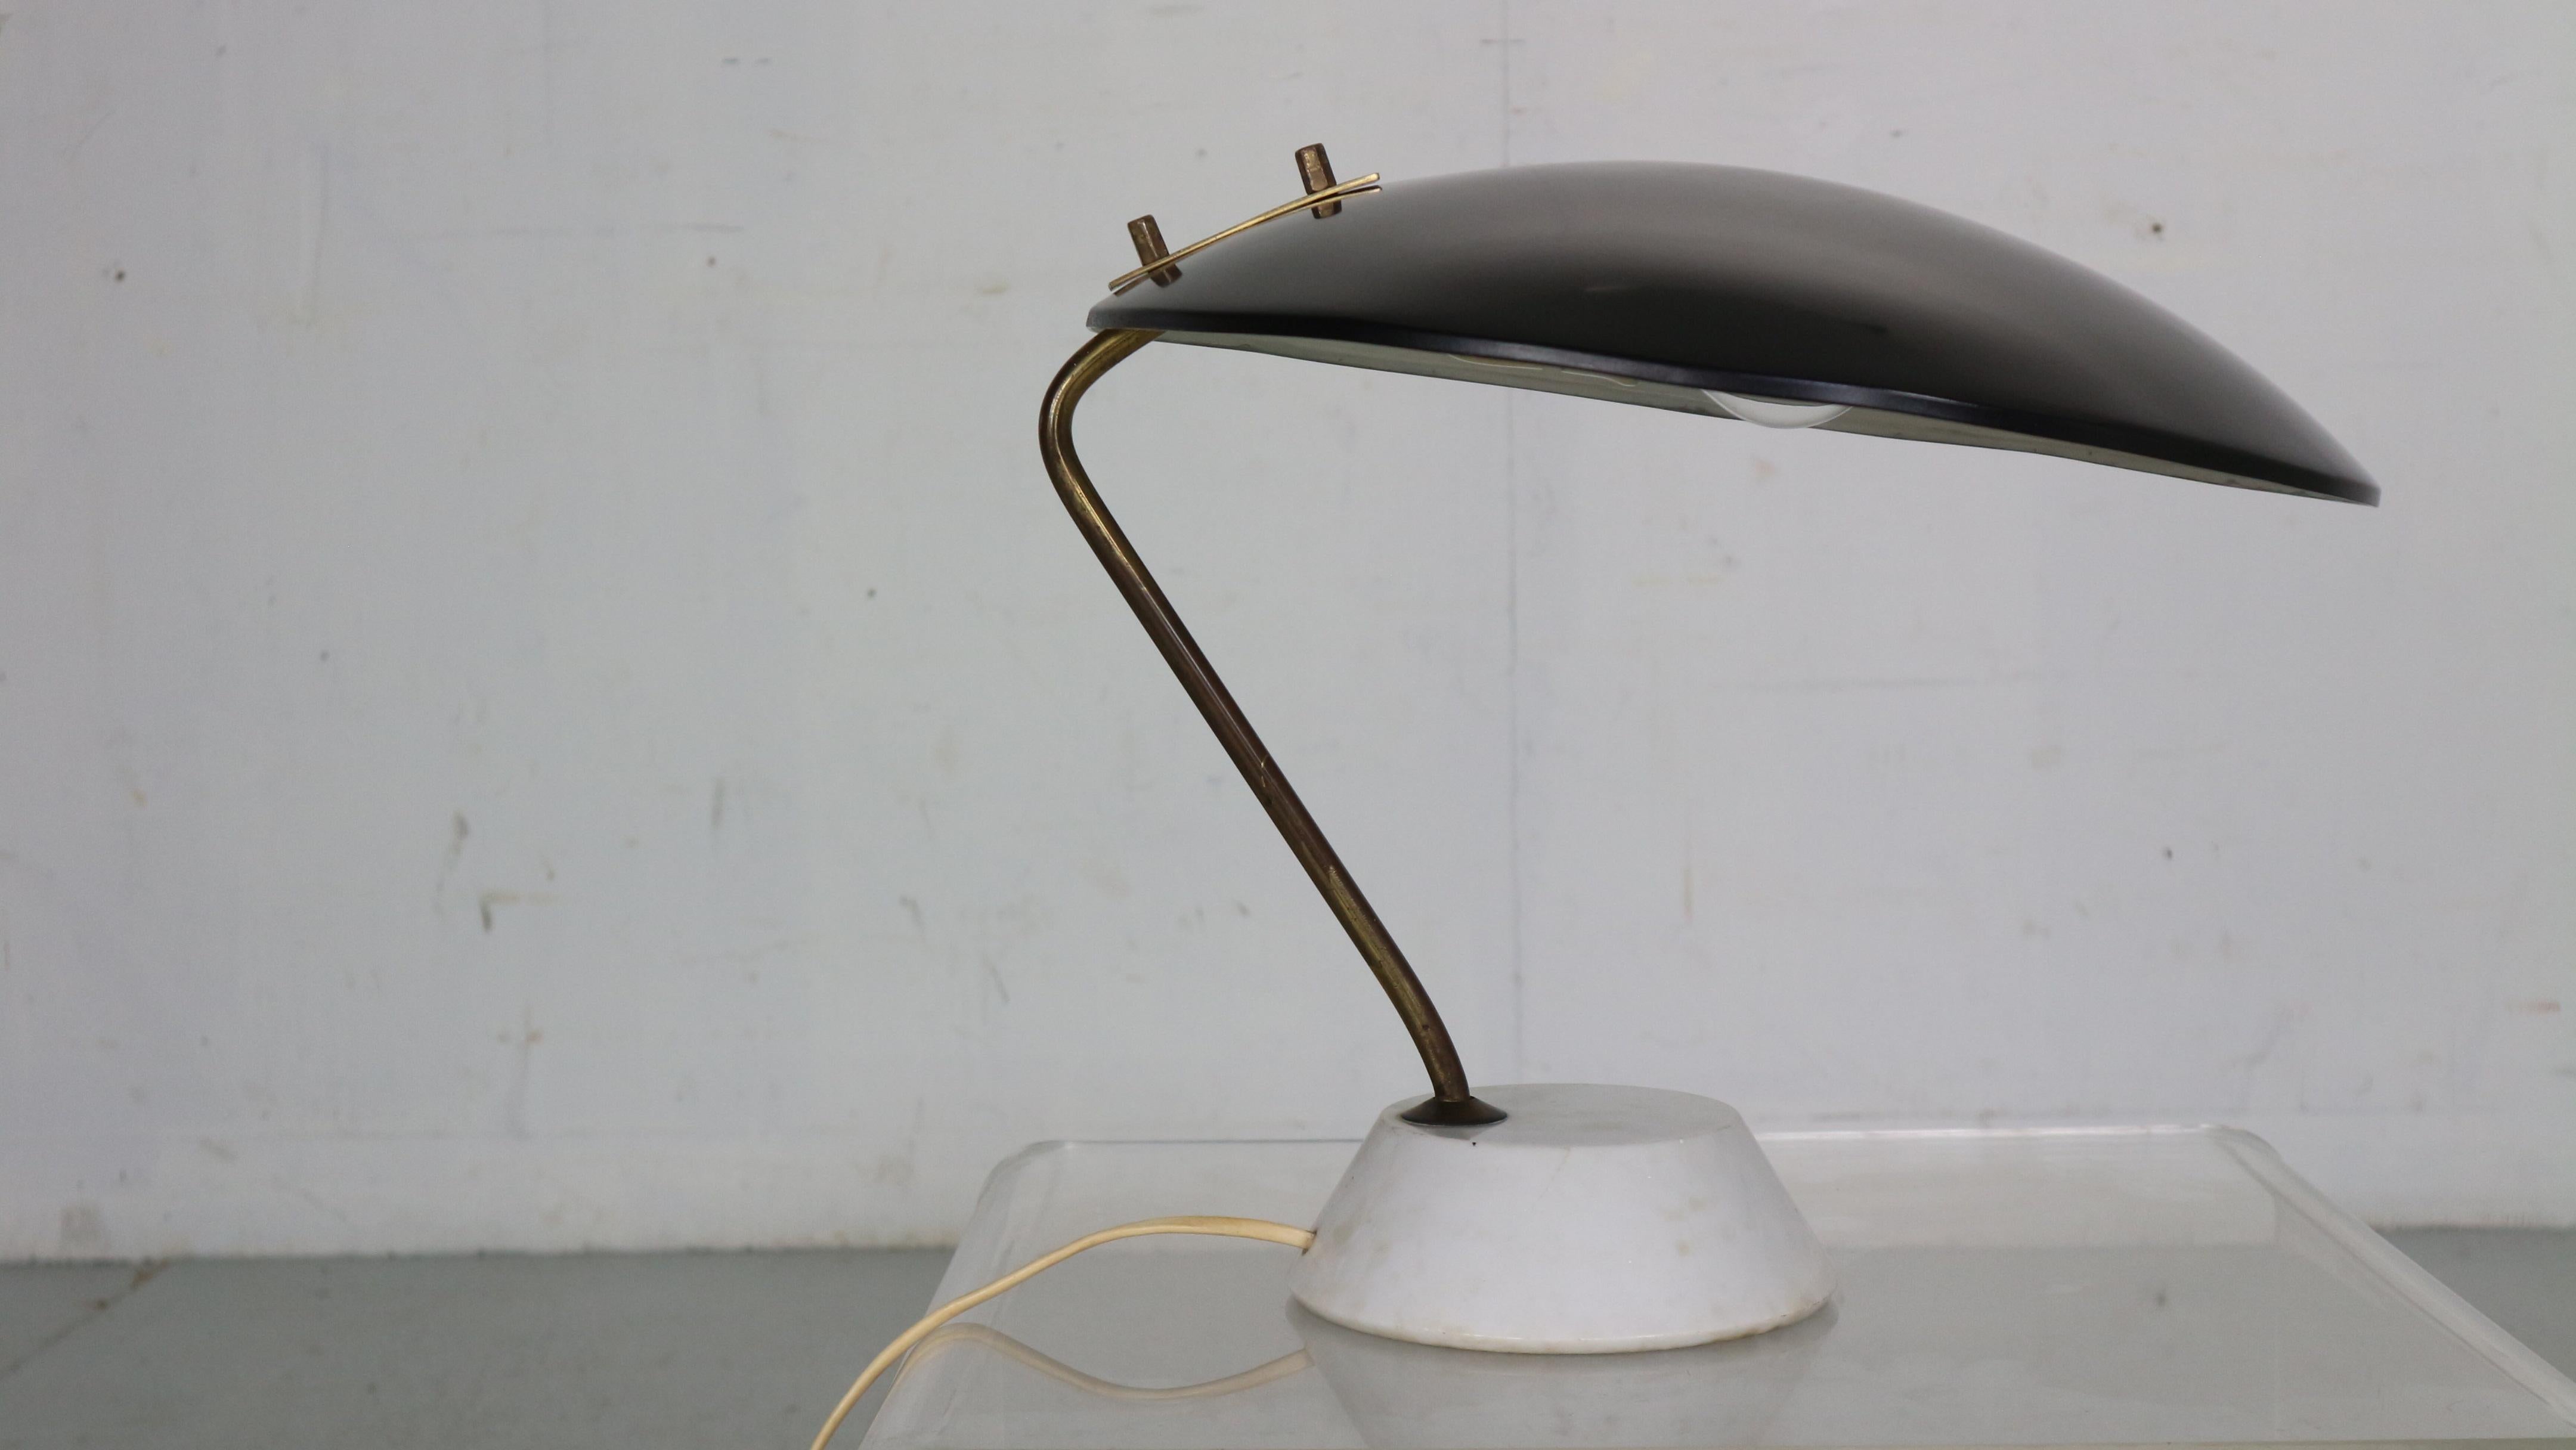 Élégante lampe de table conçue par Bruno Gatta et fabriquée pour Stilnovo dans les années 1960 en Italie.
Cette lampe de table présente un abat-jour en aluminium laqué noir avec une tige en laiton sur une base en marbre blanc carrara.

Nous avons